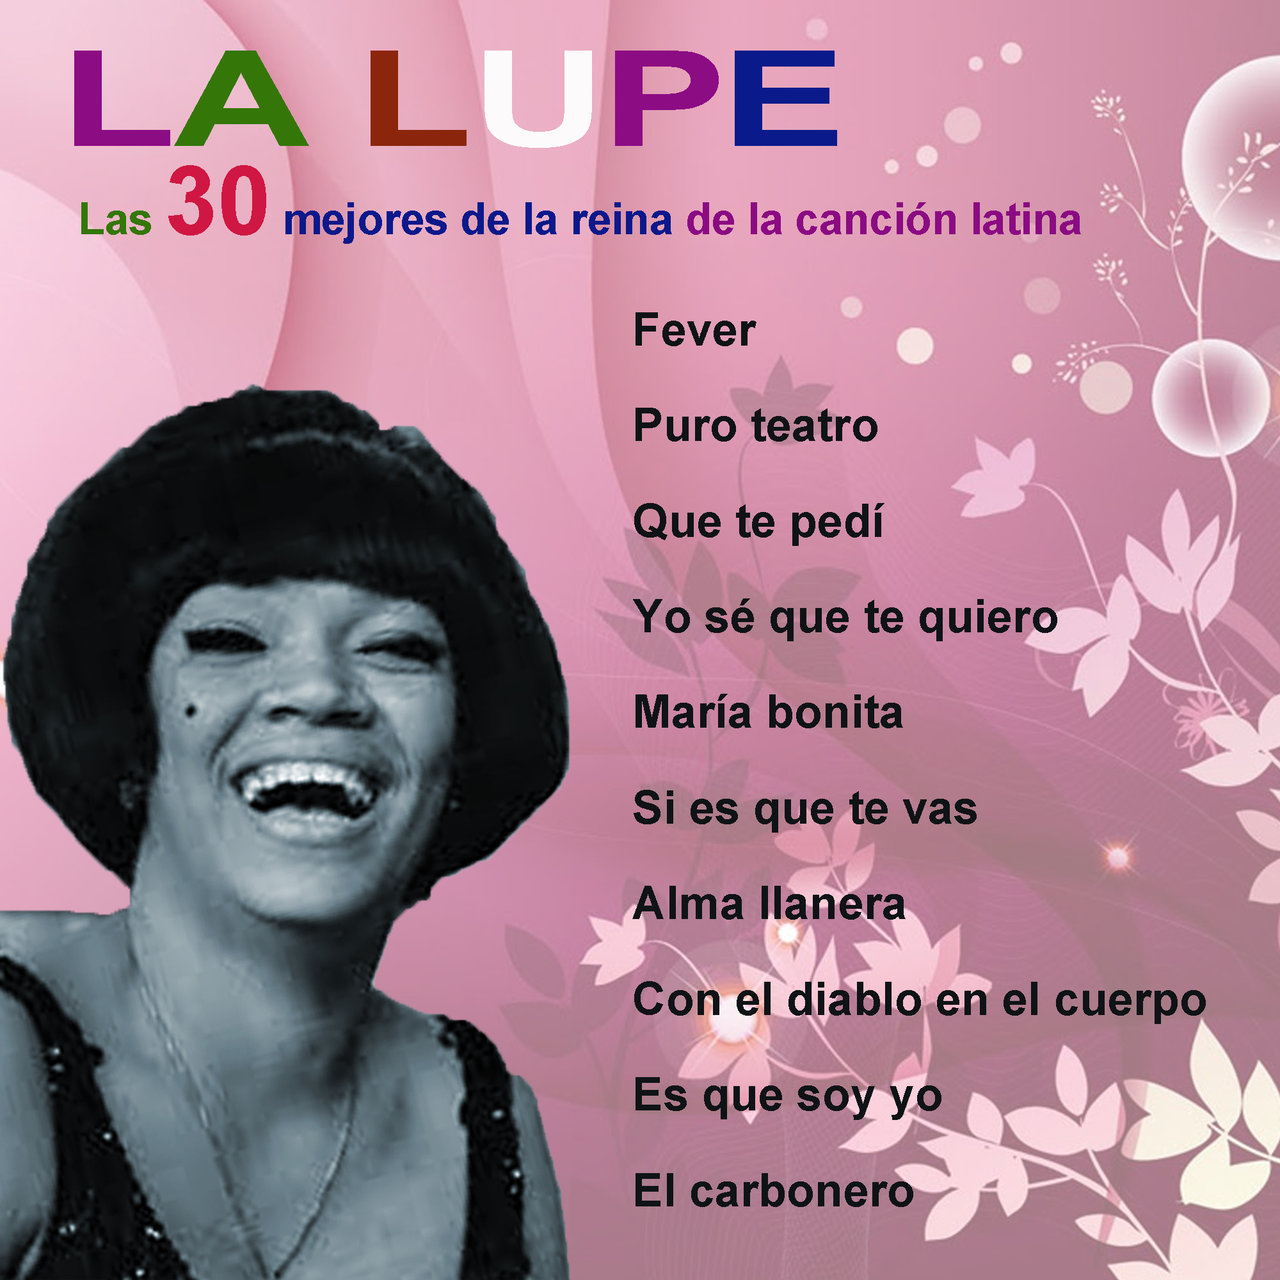 Las 30 mejores de la reina de la canción latina [2015]